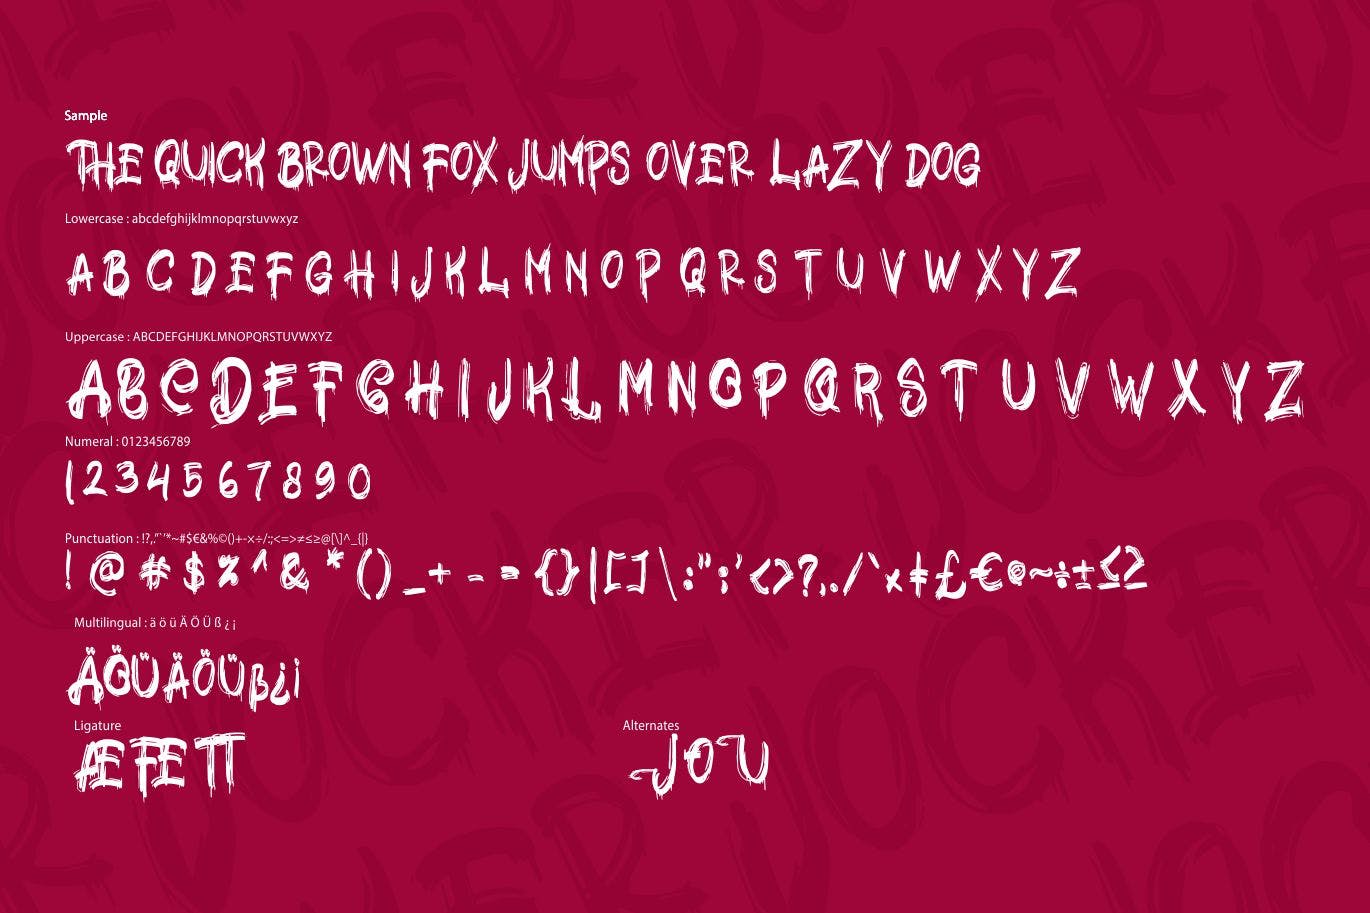 极具个性的英文笔刷装饰字体亿图网易图库精选 Jocker | Psychotype Font Theme插图(5)